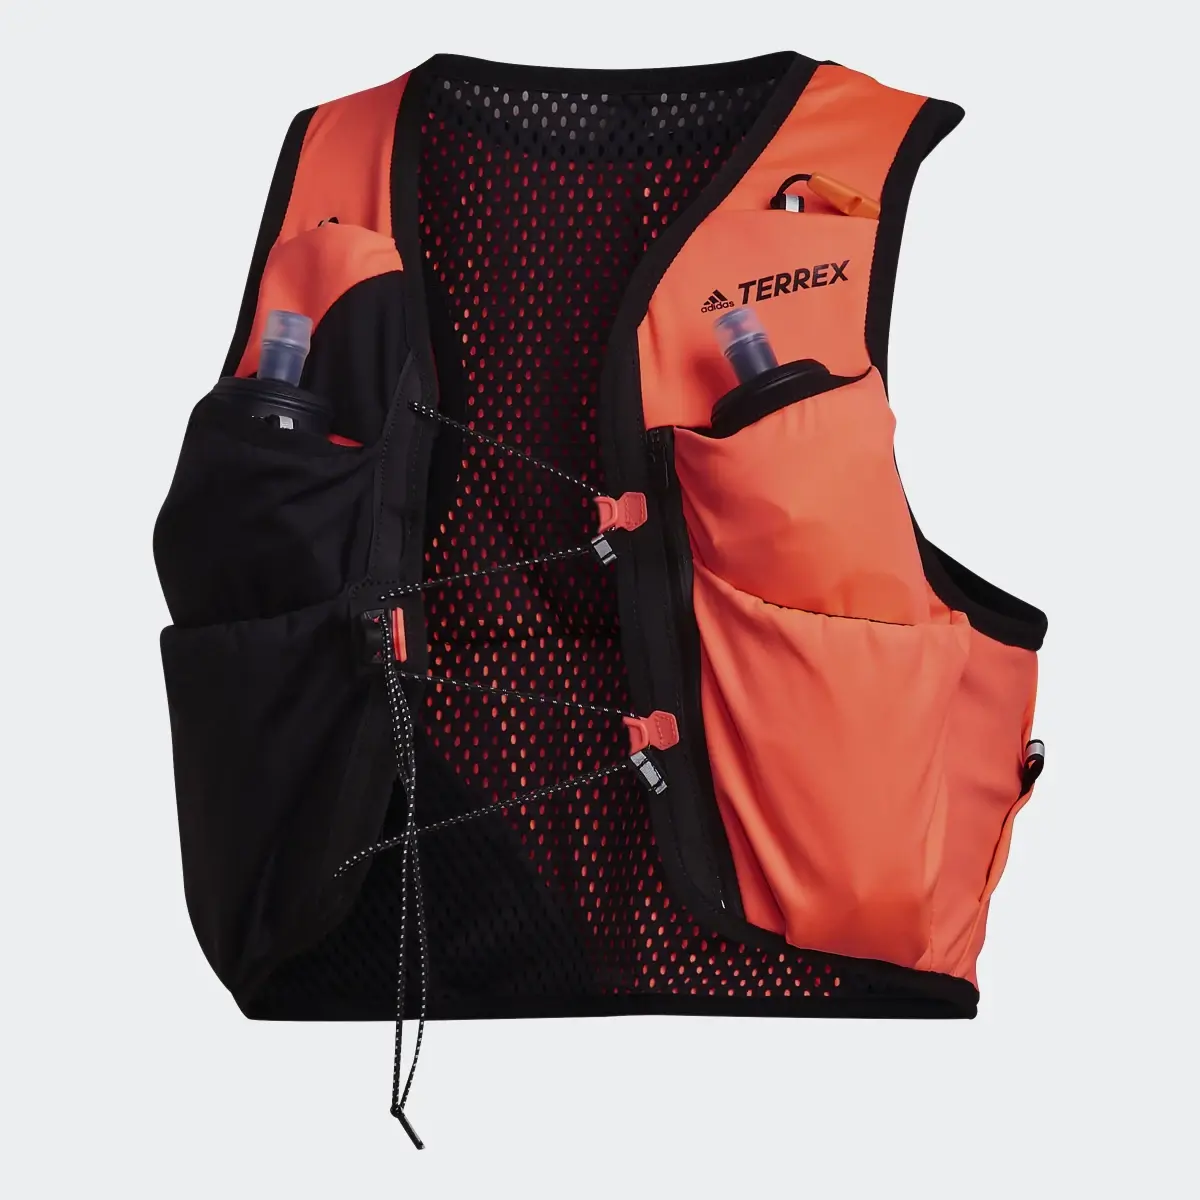 Adidas Terrex Trail Running Vest. 2